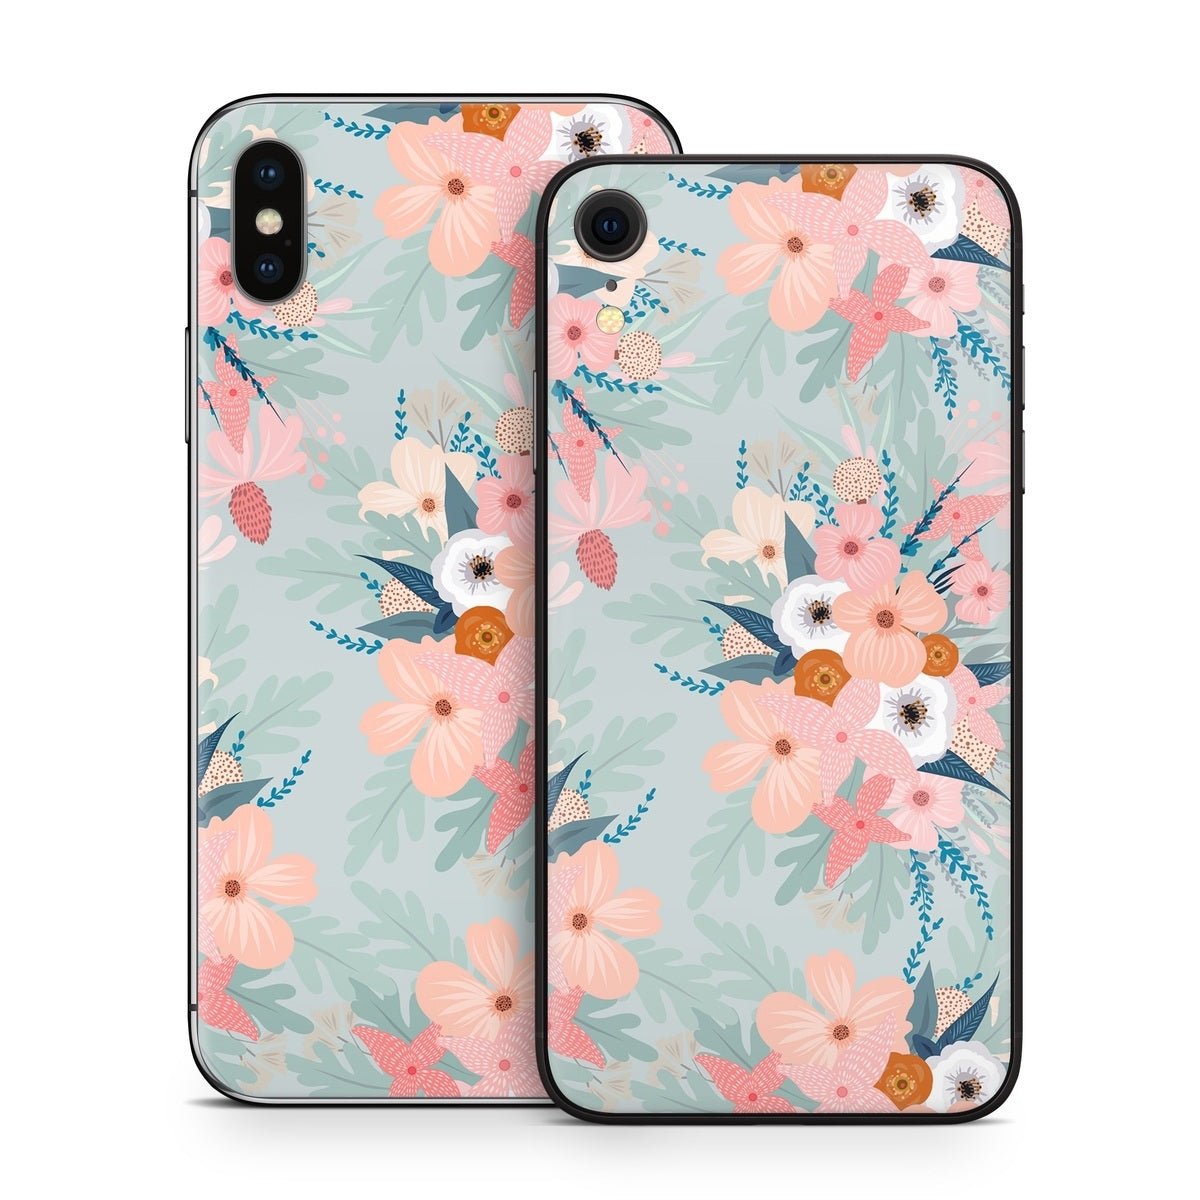 Ada Garden - Apple iPhone X Skin - Iveta Abolina - DecalGirl